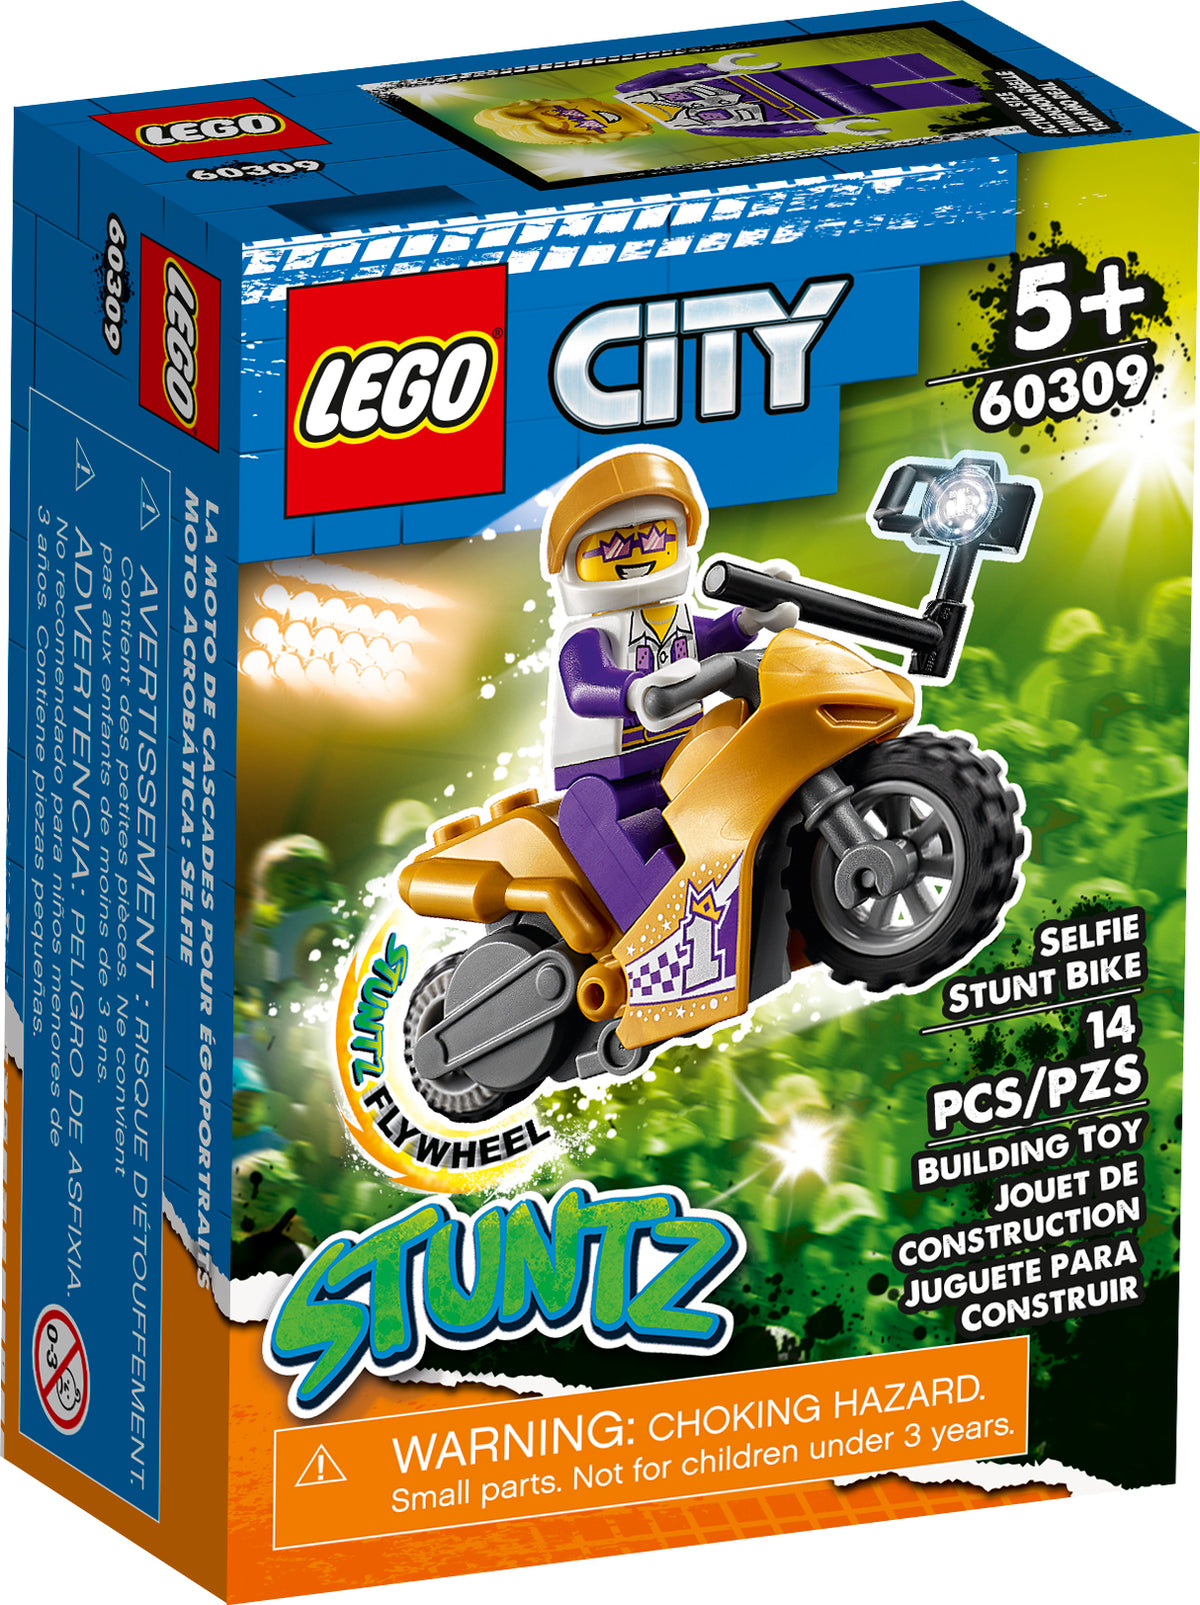 Lego 0 a 2 años, Juego De Juguetes De Construcción Preescolares, 117  Piezas, Marca Lego